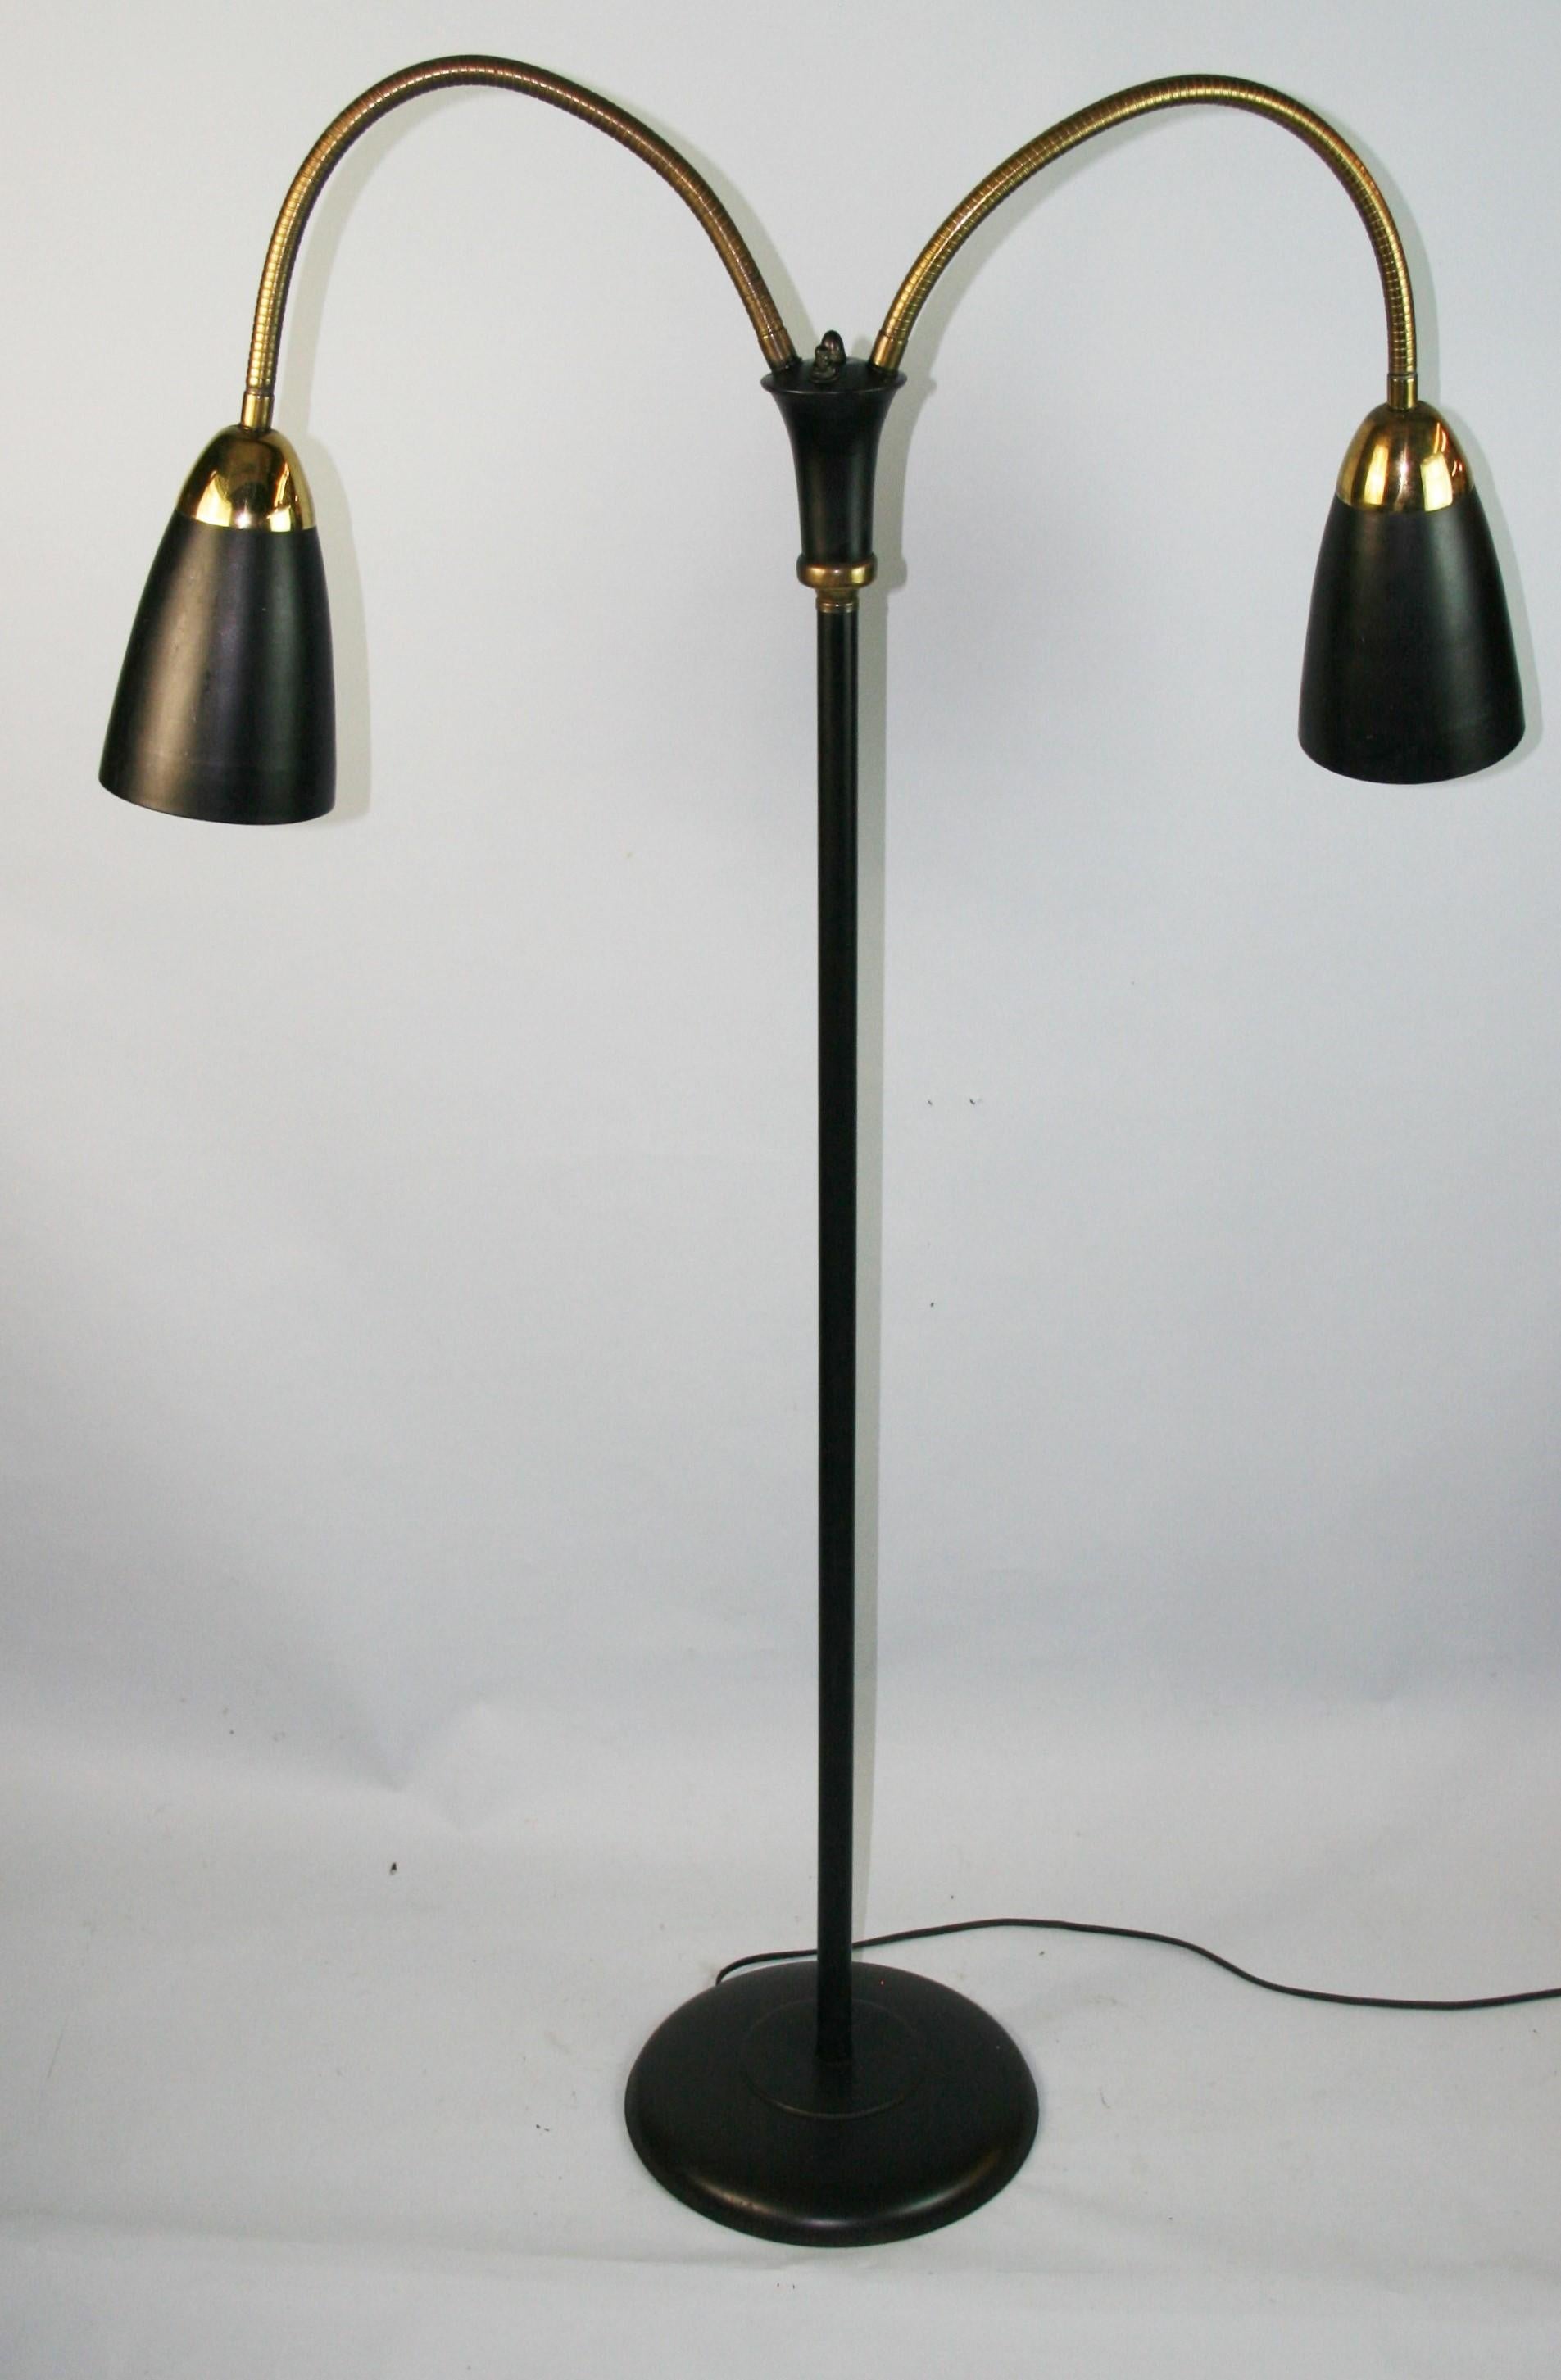 1363 lampadaire italien flexible avec interrupteur à deux voies intégré
Câblage existant en état de fonctionnement.